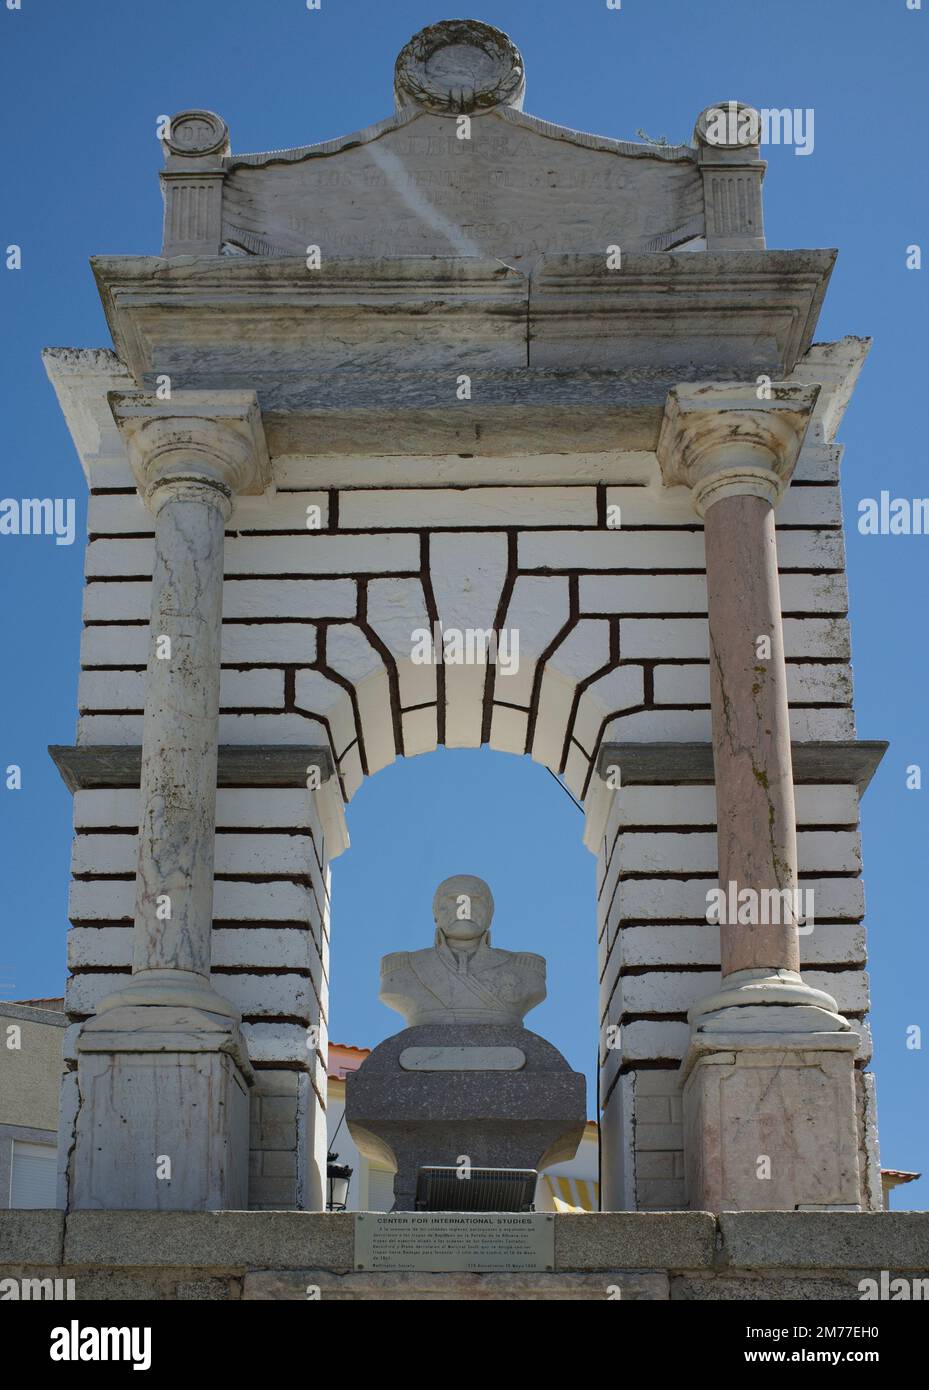 La Albuera, España - 12th de junio de 2021: Monumento al general Castanos, comandante del ejército español en la batalla de La Albuera, 1811. Badajoz, España Foto de stock